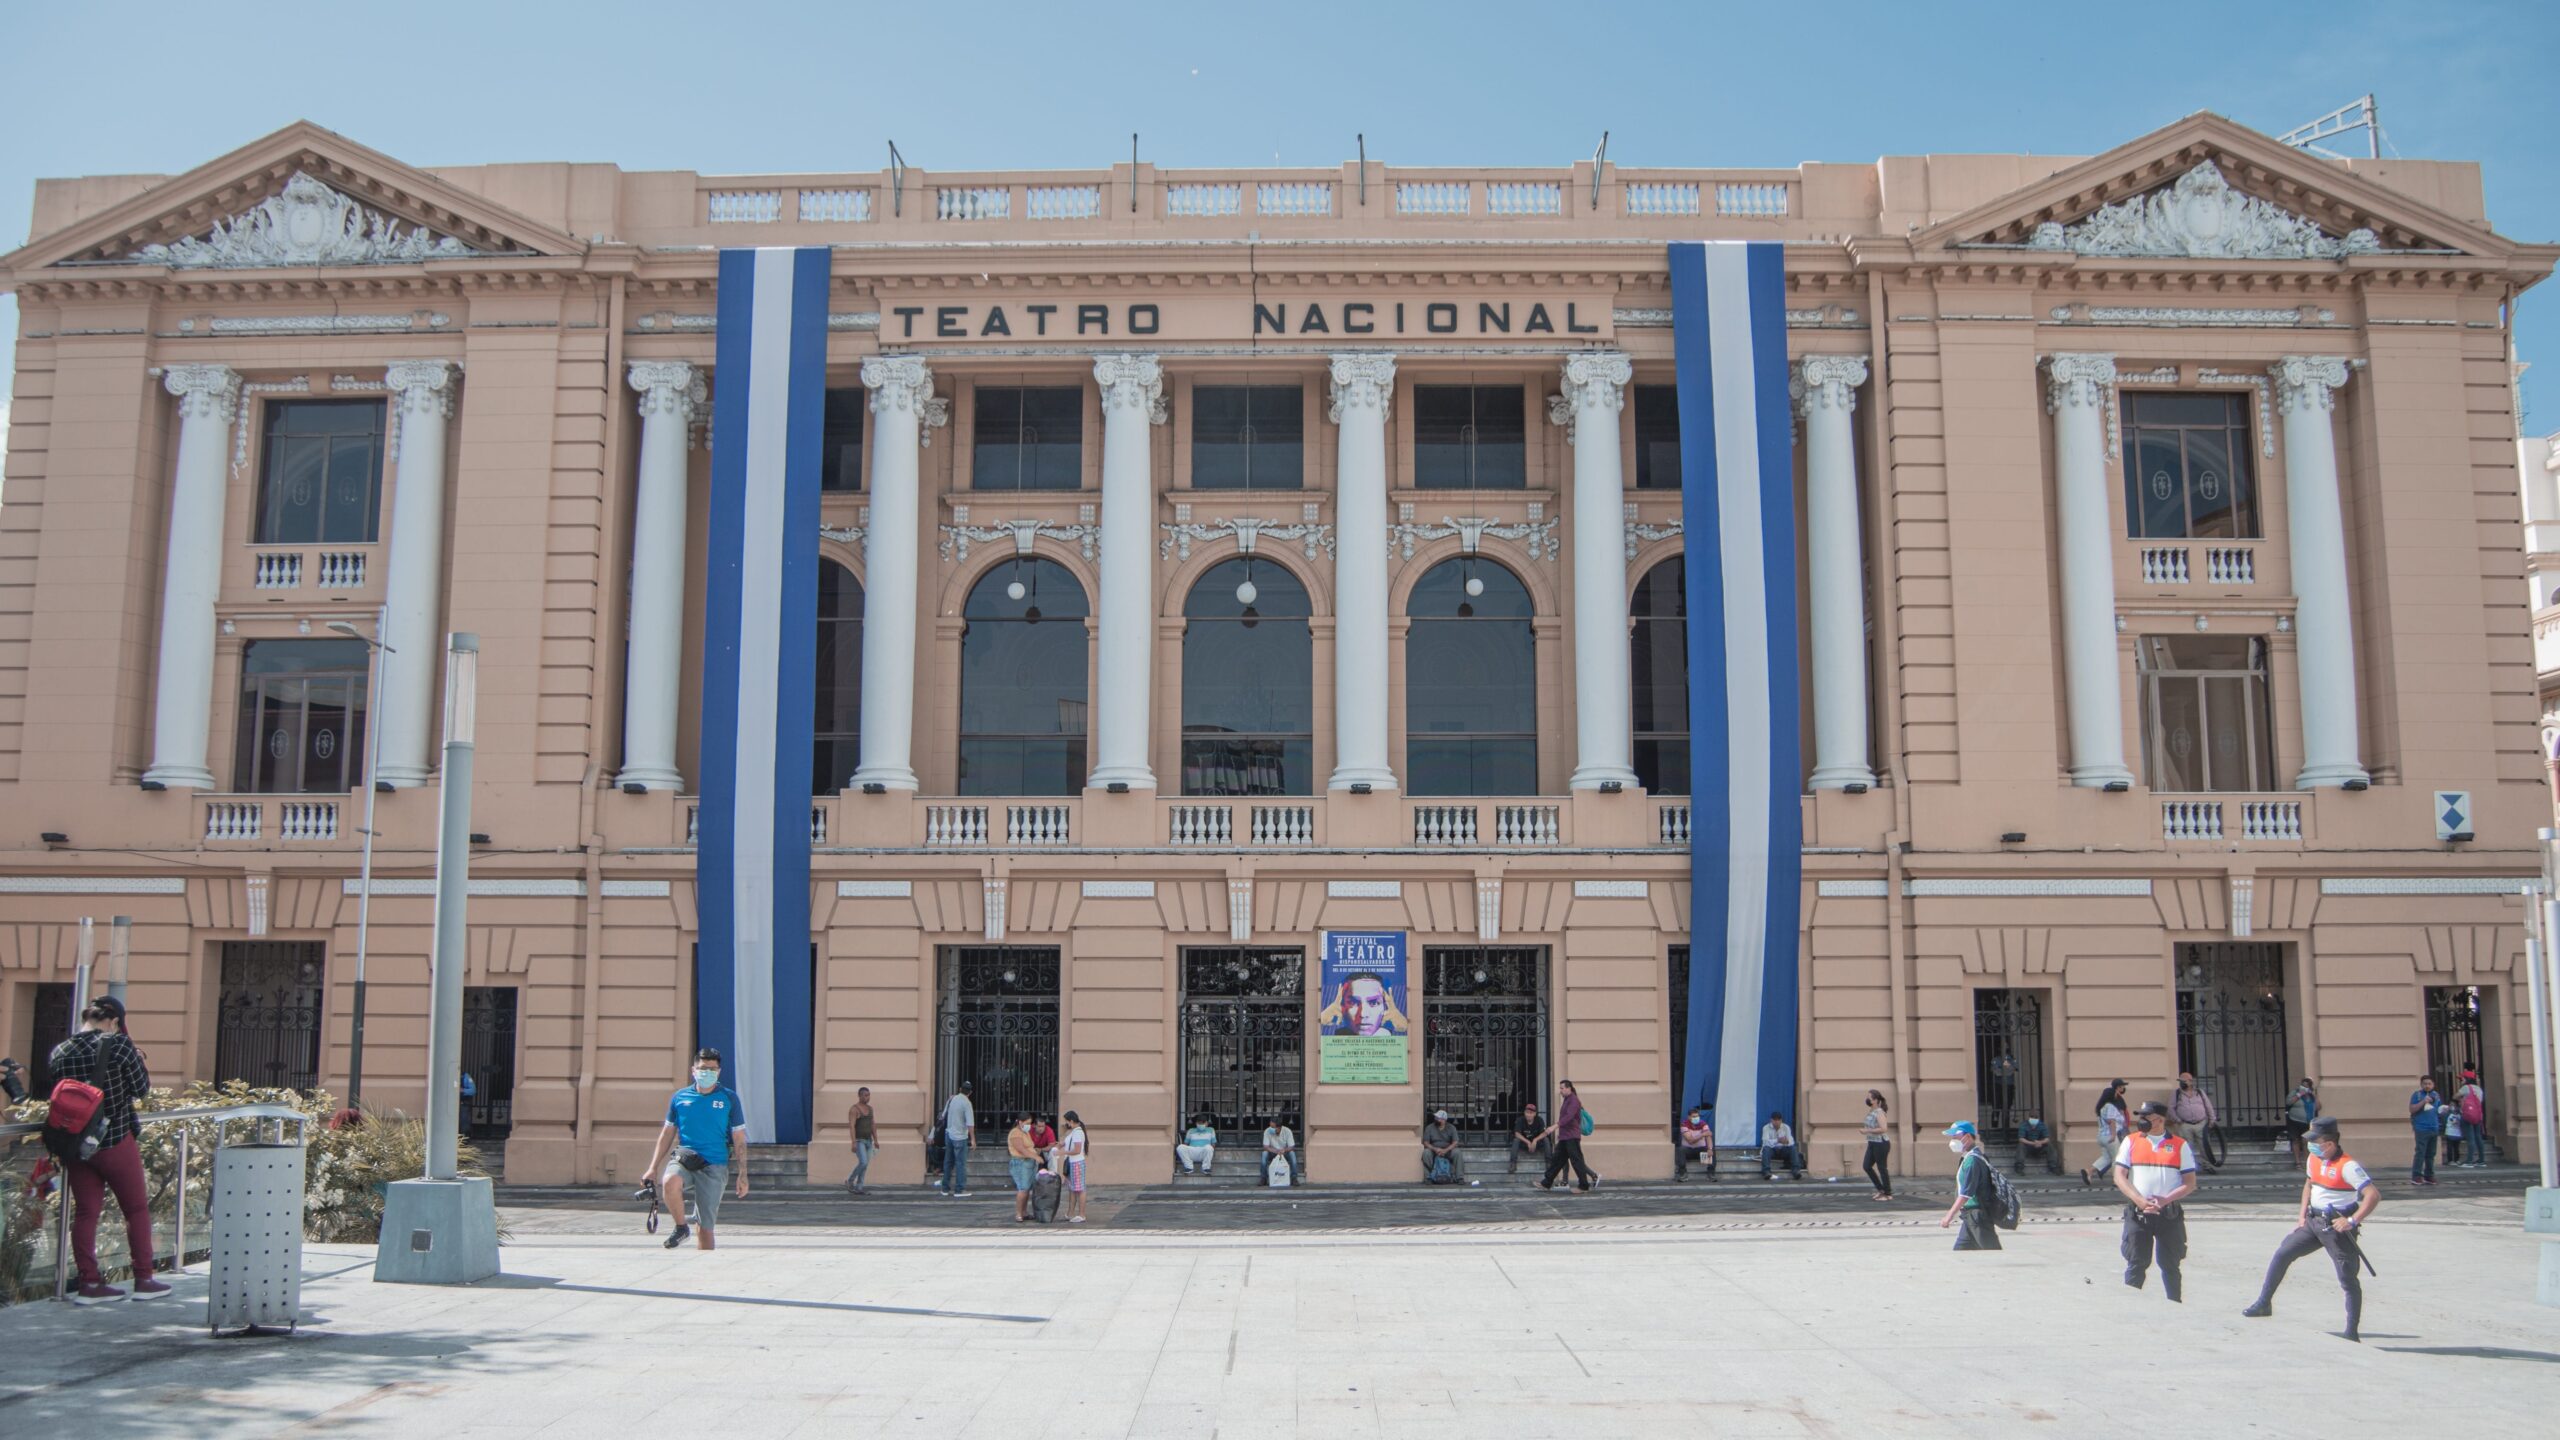 Teatro Nacional, San Salvador, El Salvador